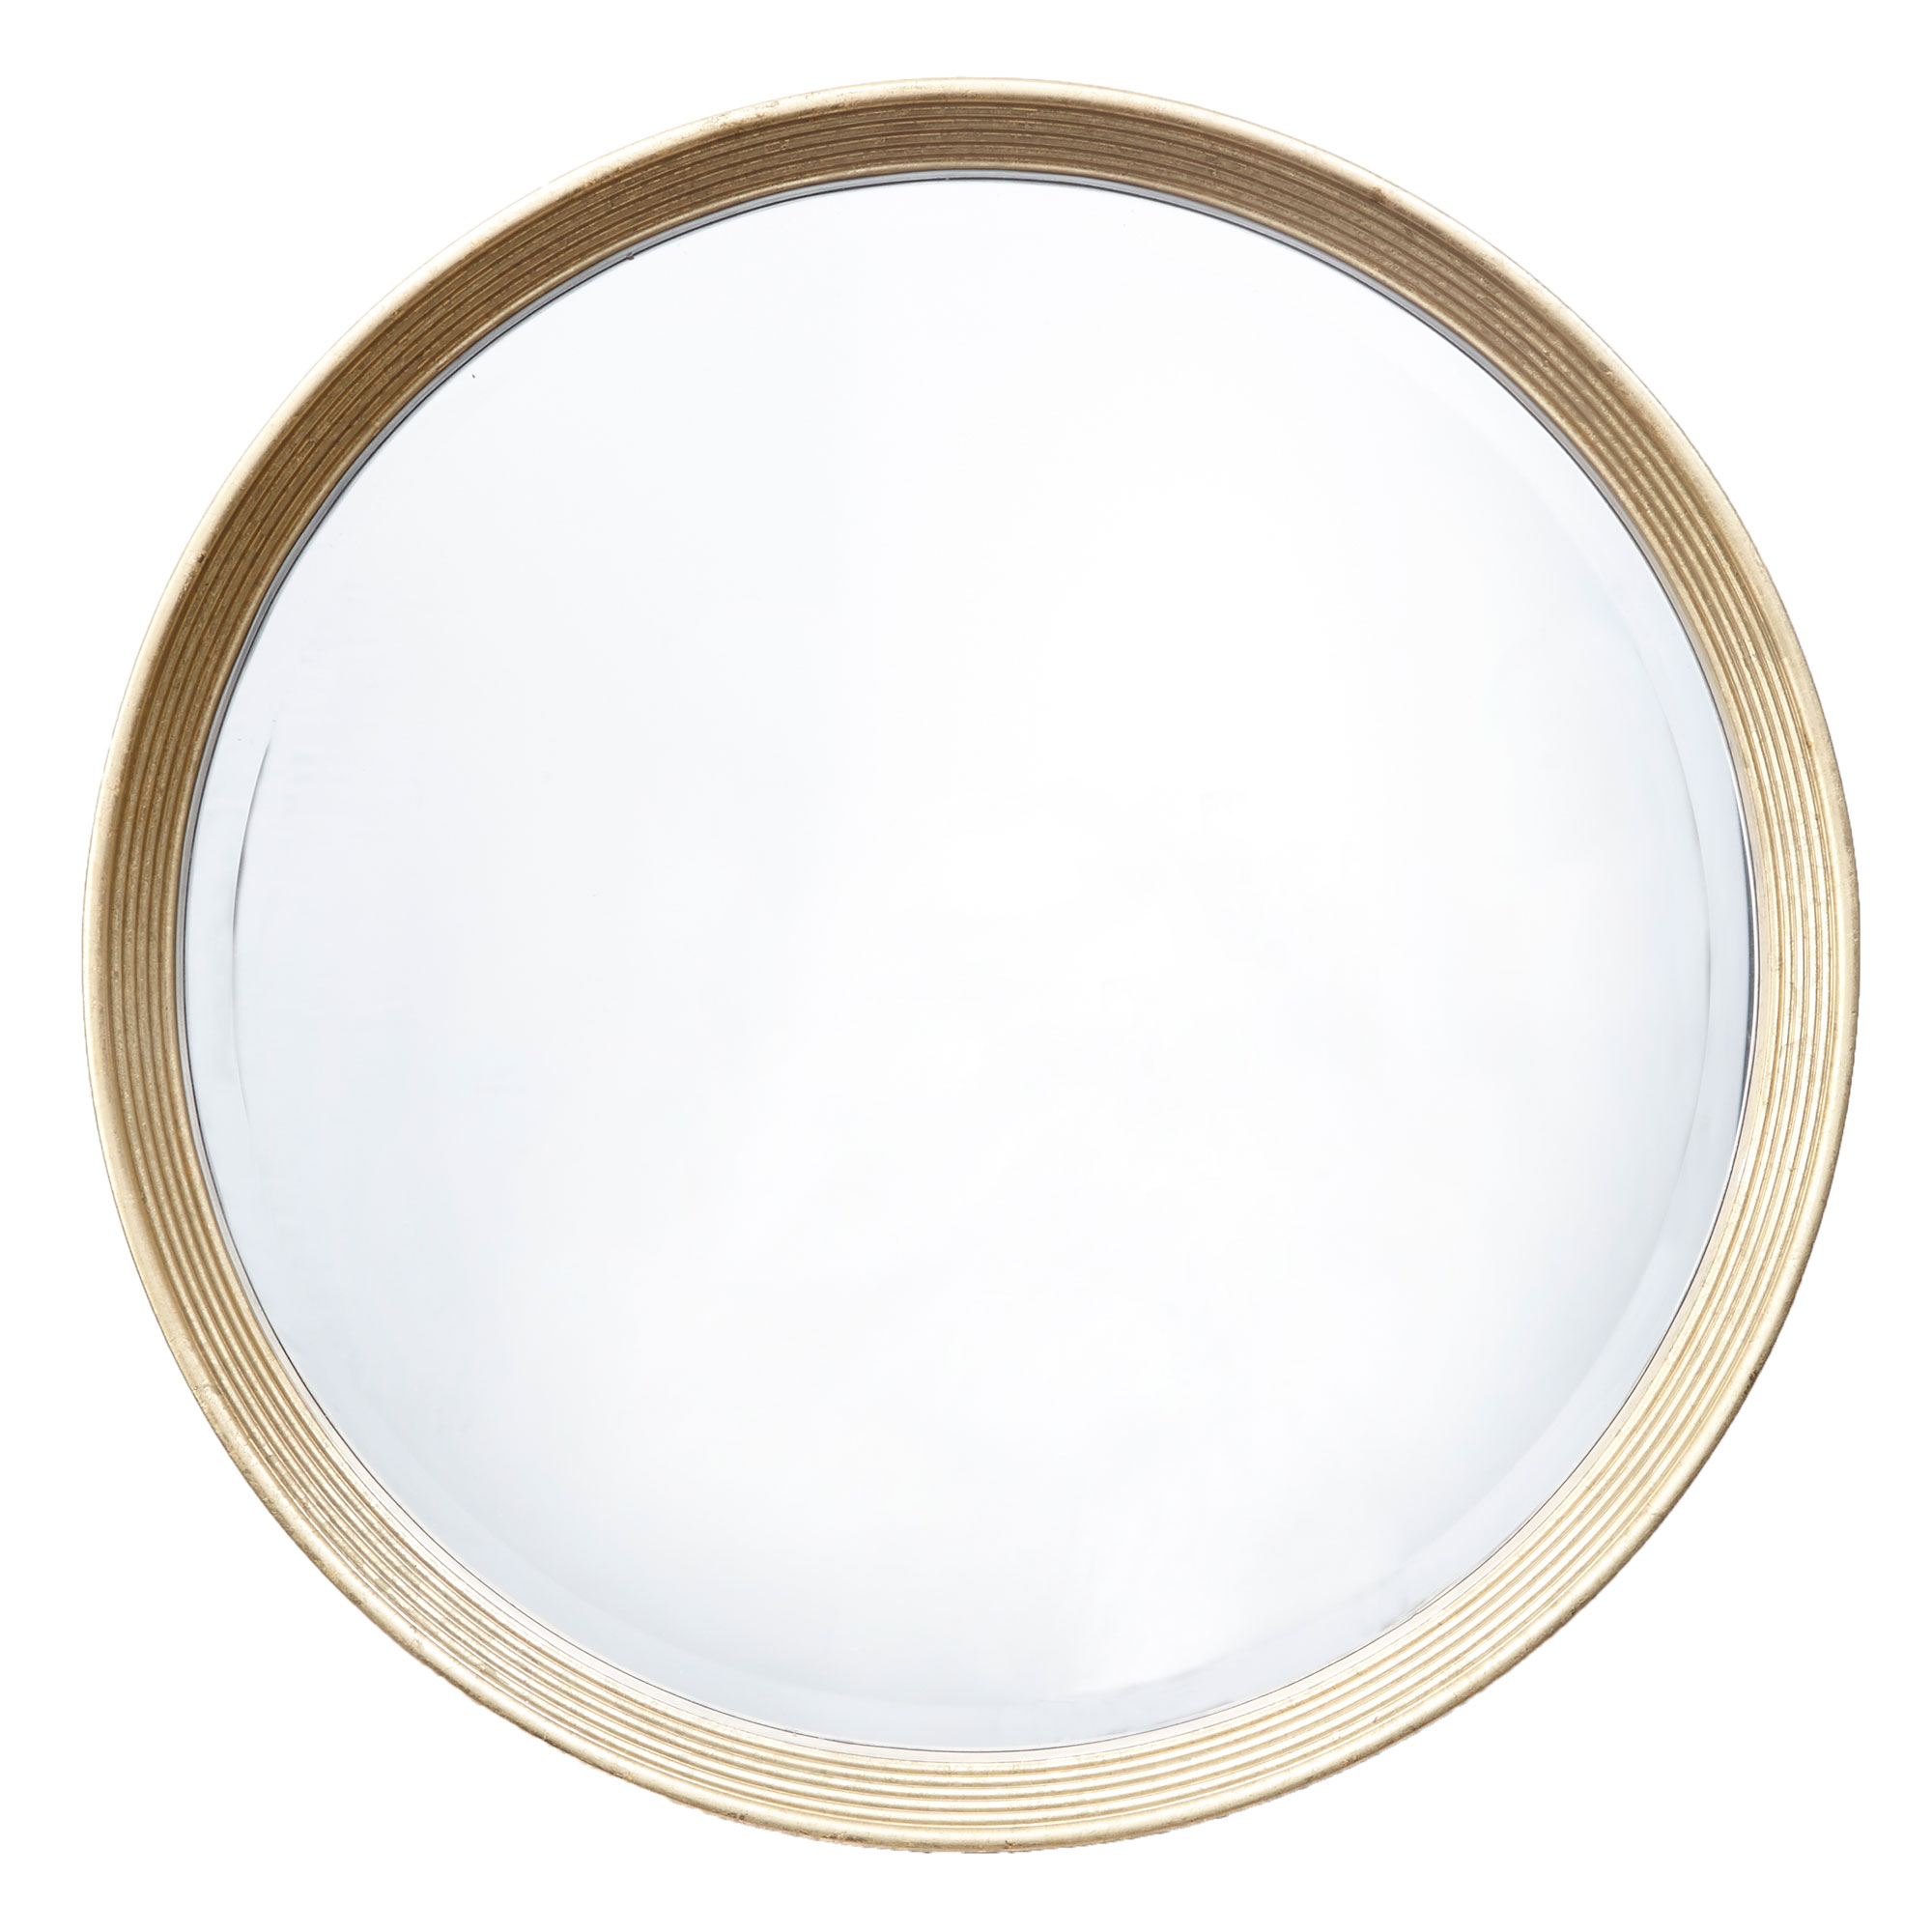 7060 the lana mirror round brass